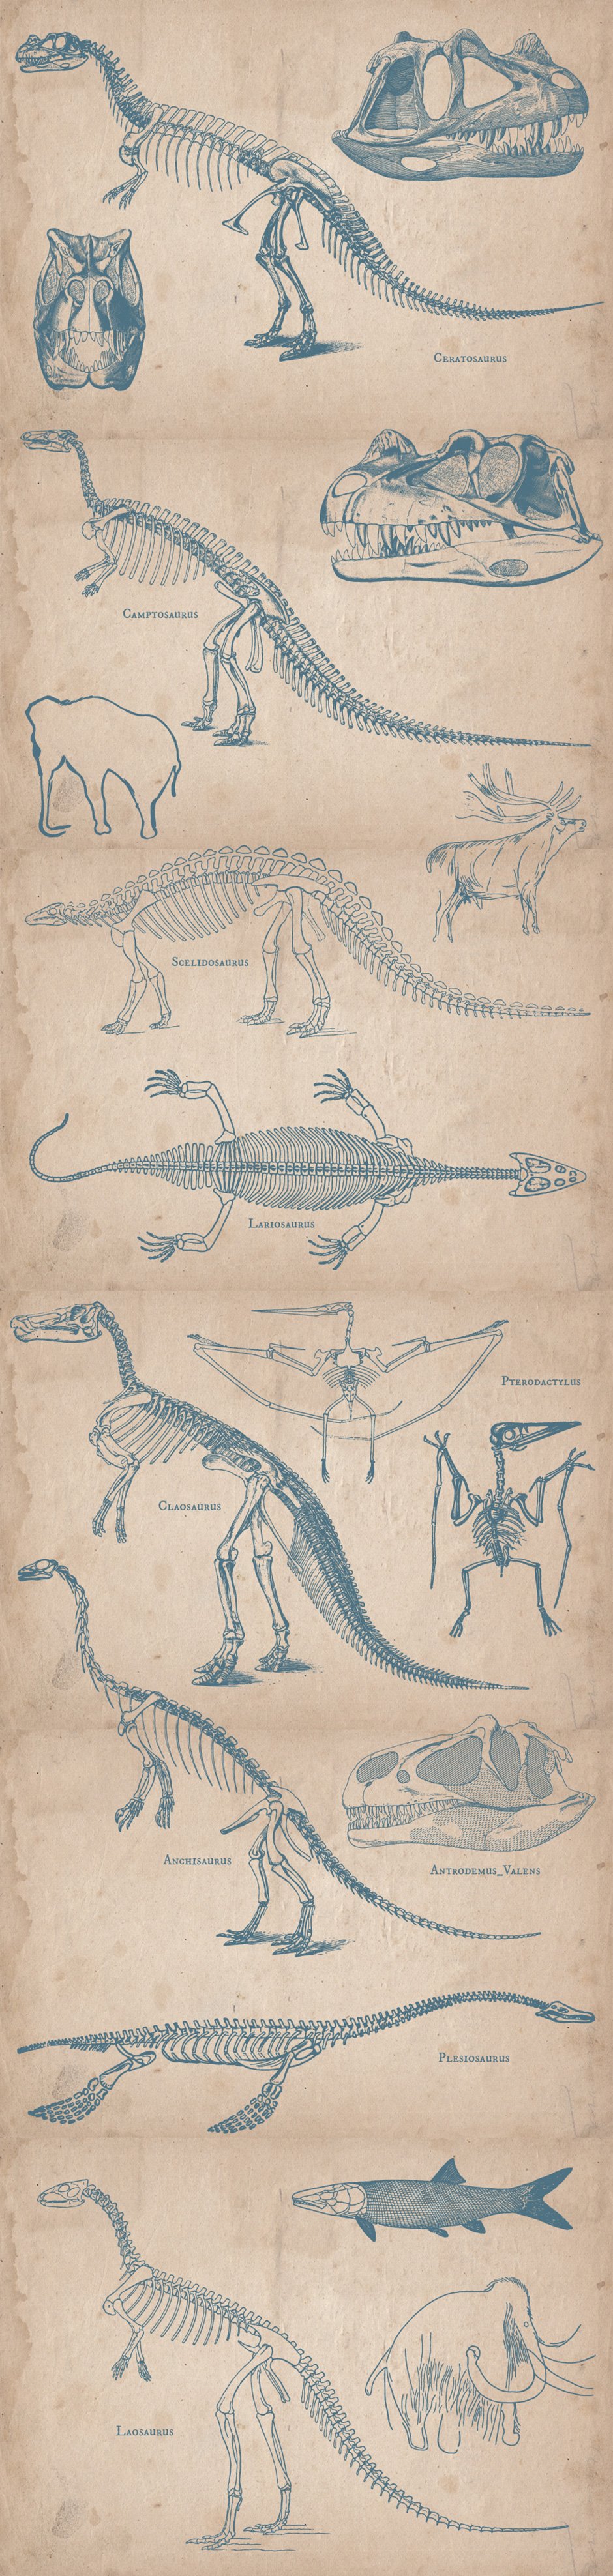 Prehistoric Animals